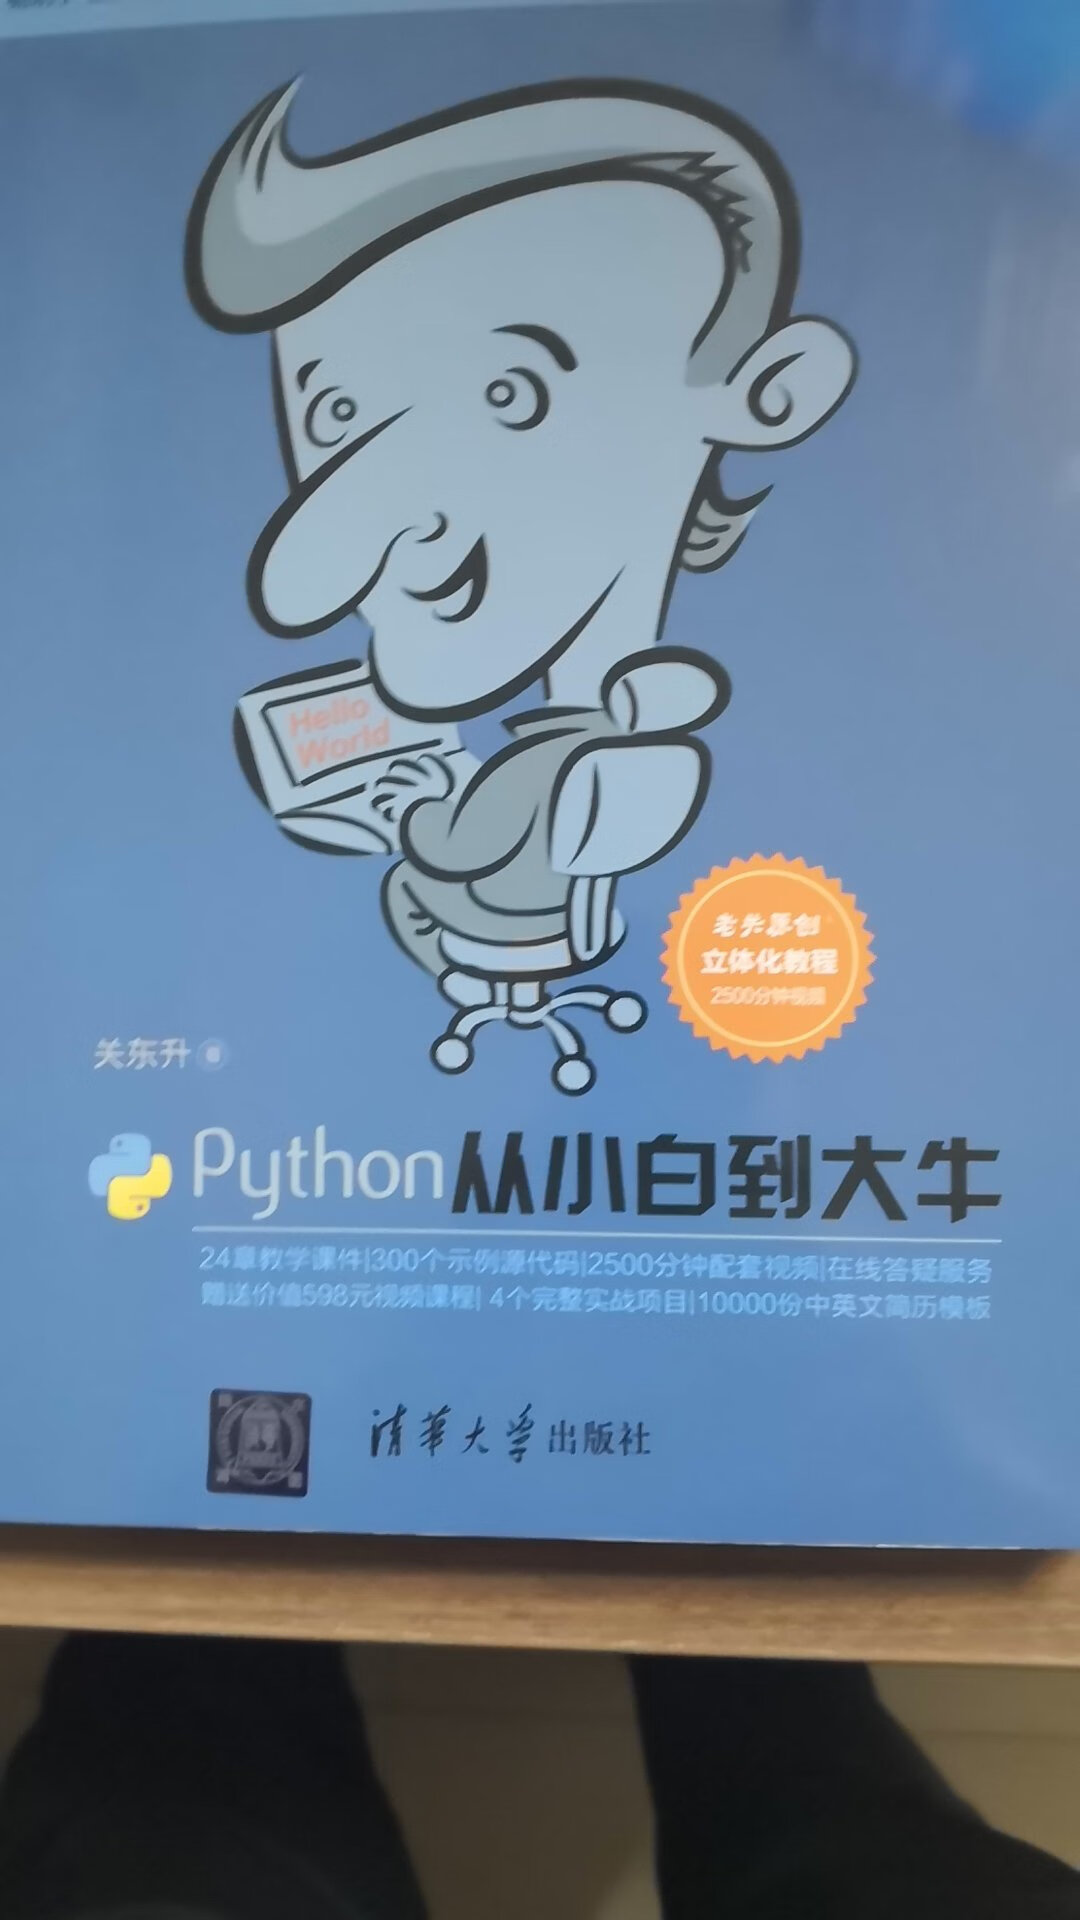 关注python已经很久了，这次第一次买了一本真真正正意义上的教材，希望能够帮助我掌握这门语言。